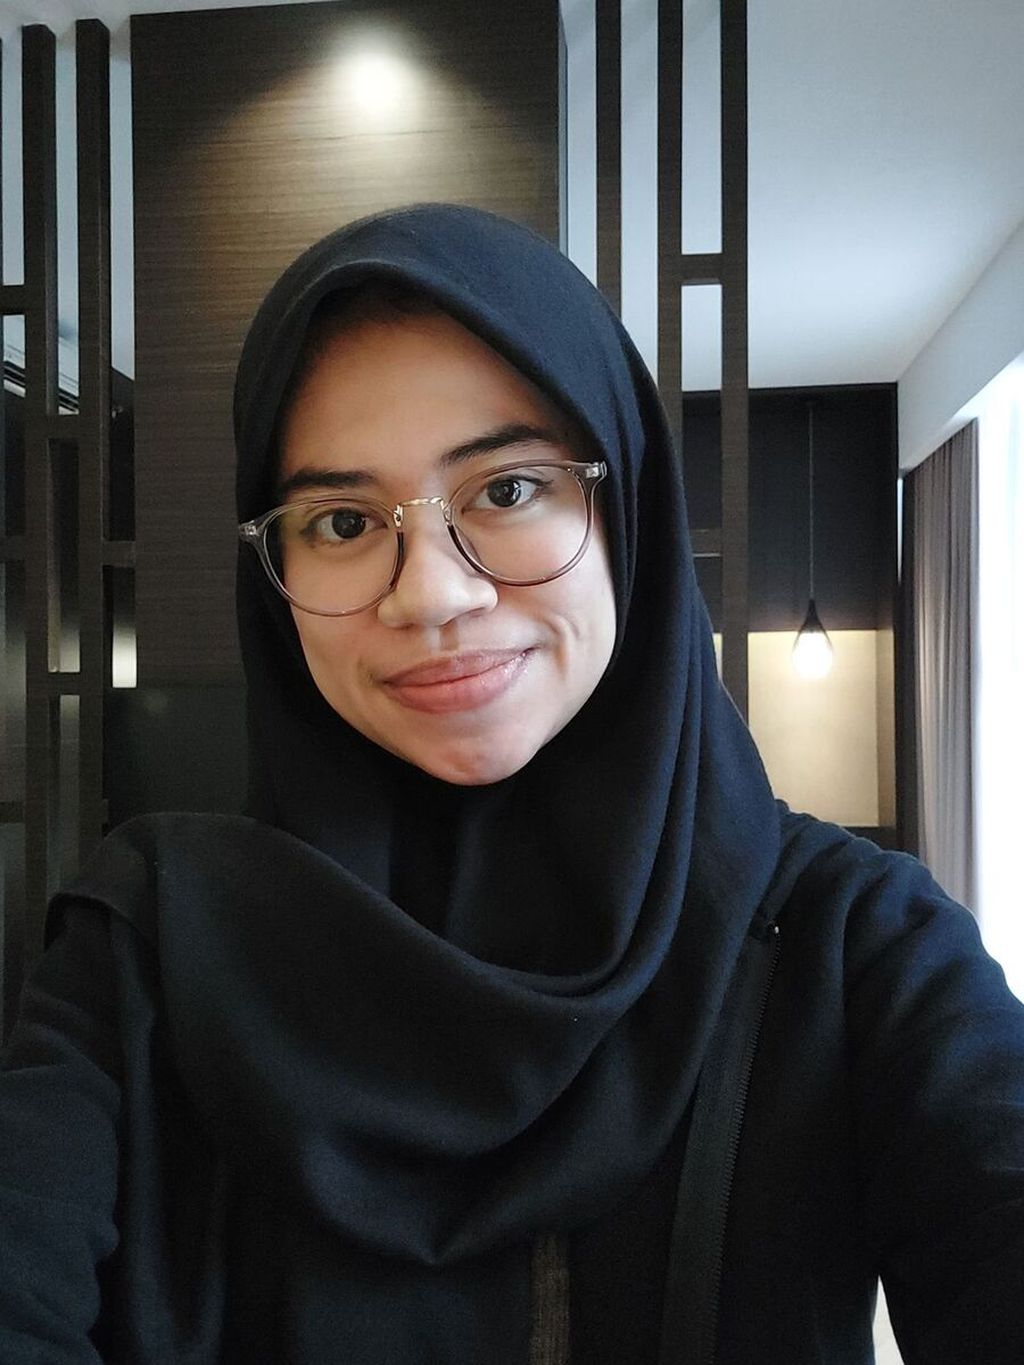 Jurnalis data, Monavia Ayu Rizaty (28), memilih berhemat dengan membawa bekal makan siang dari rumah untuk dikonsumsi di kantor.